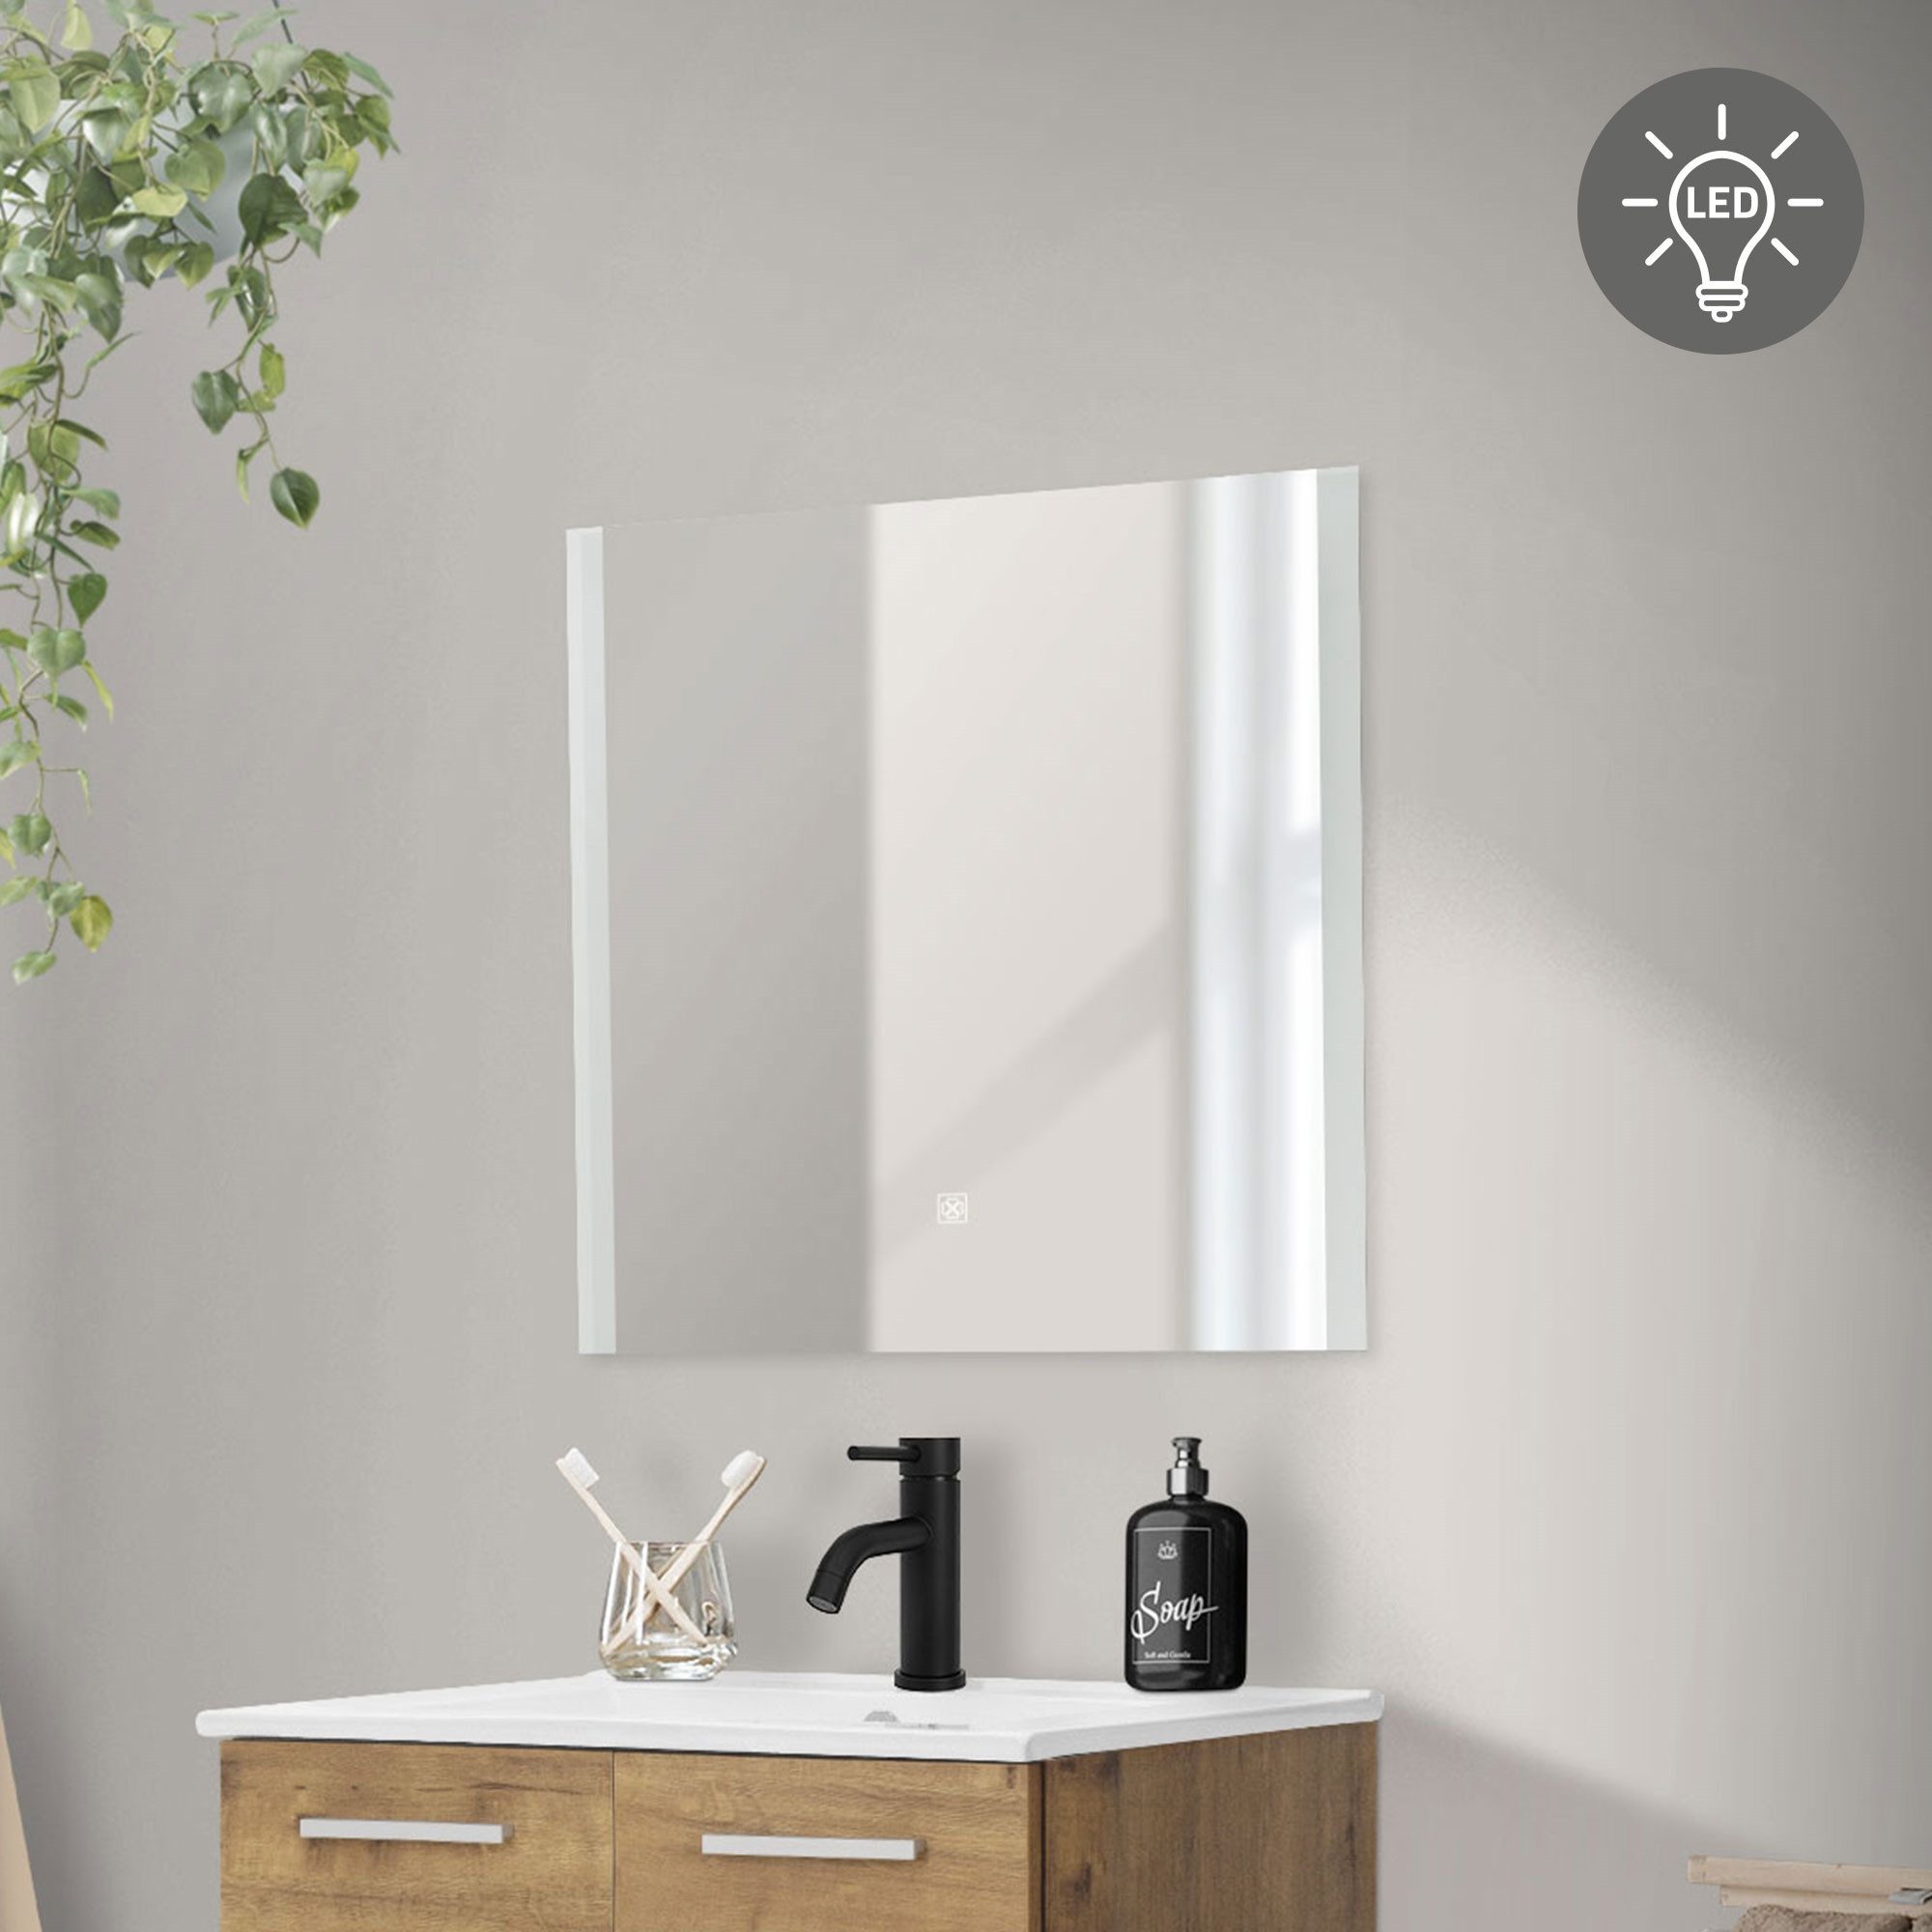 ML-DESIGN Badezimmerspiegelschrank Badezimmerspiegel aus Glas Wandmontage Deko Spiegel Badspiegel Weiß mit LED-Beleuchtung und Touchschalter 60x60cm